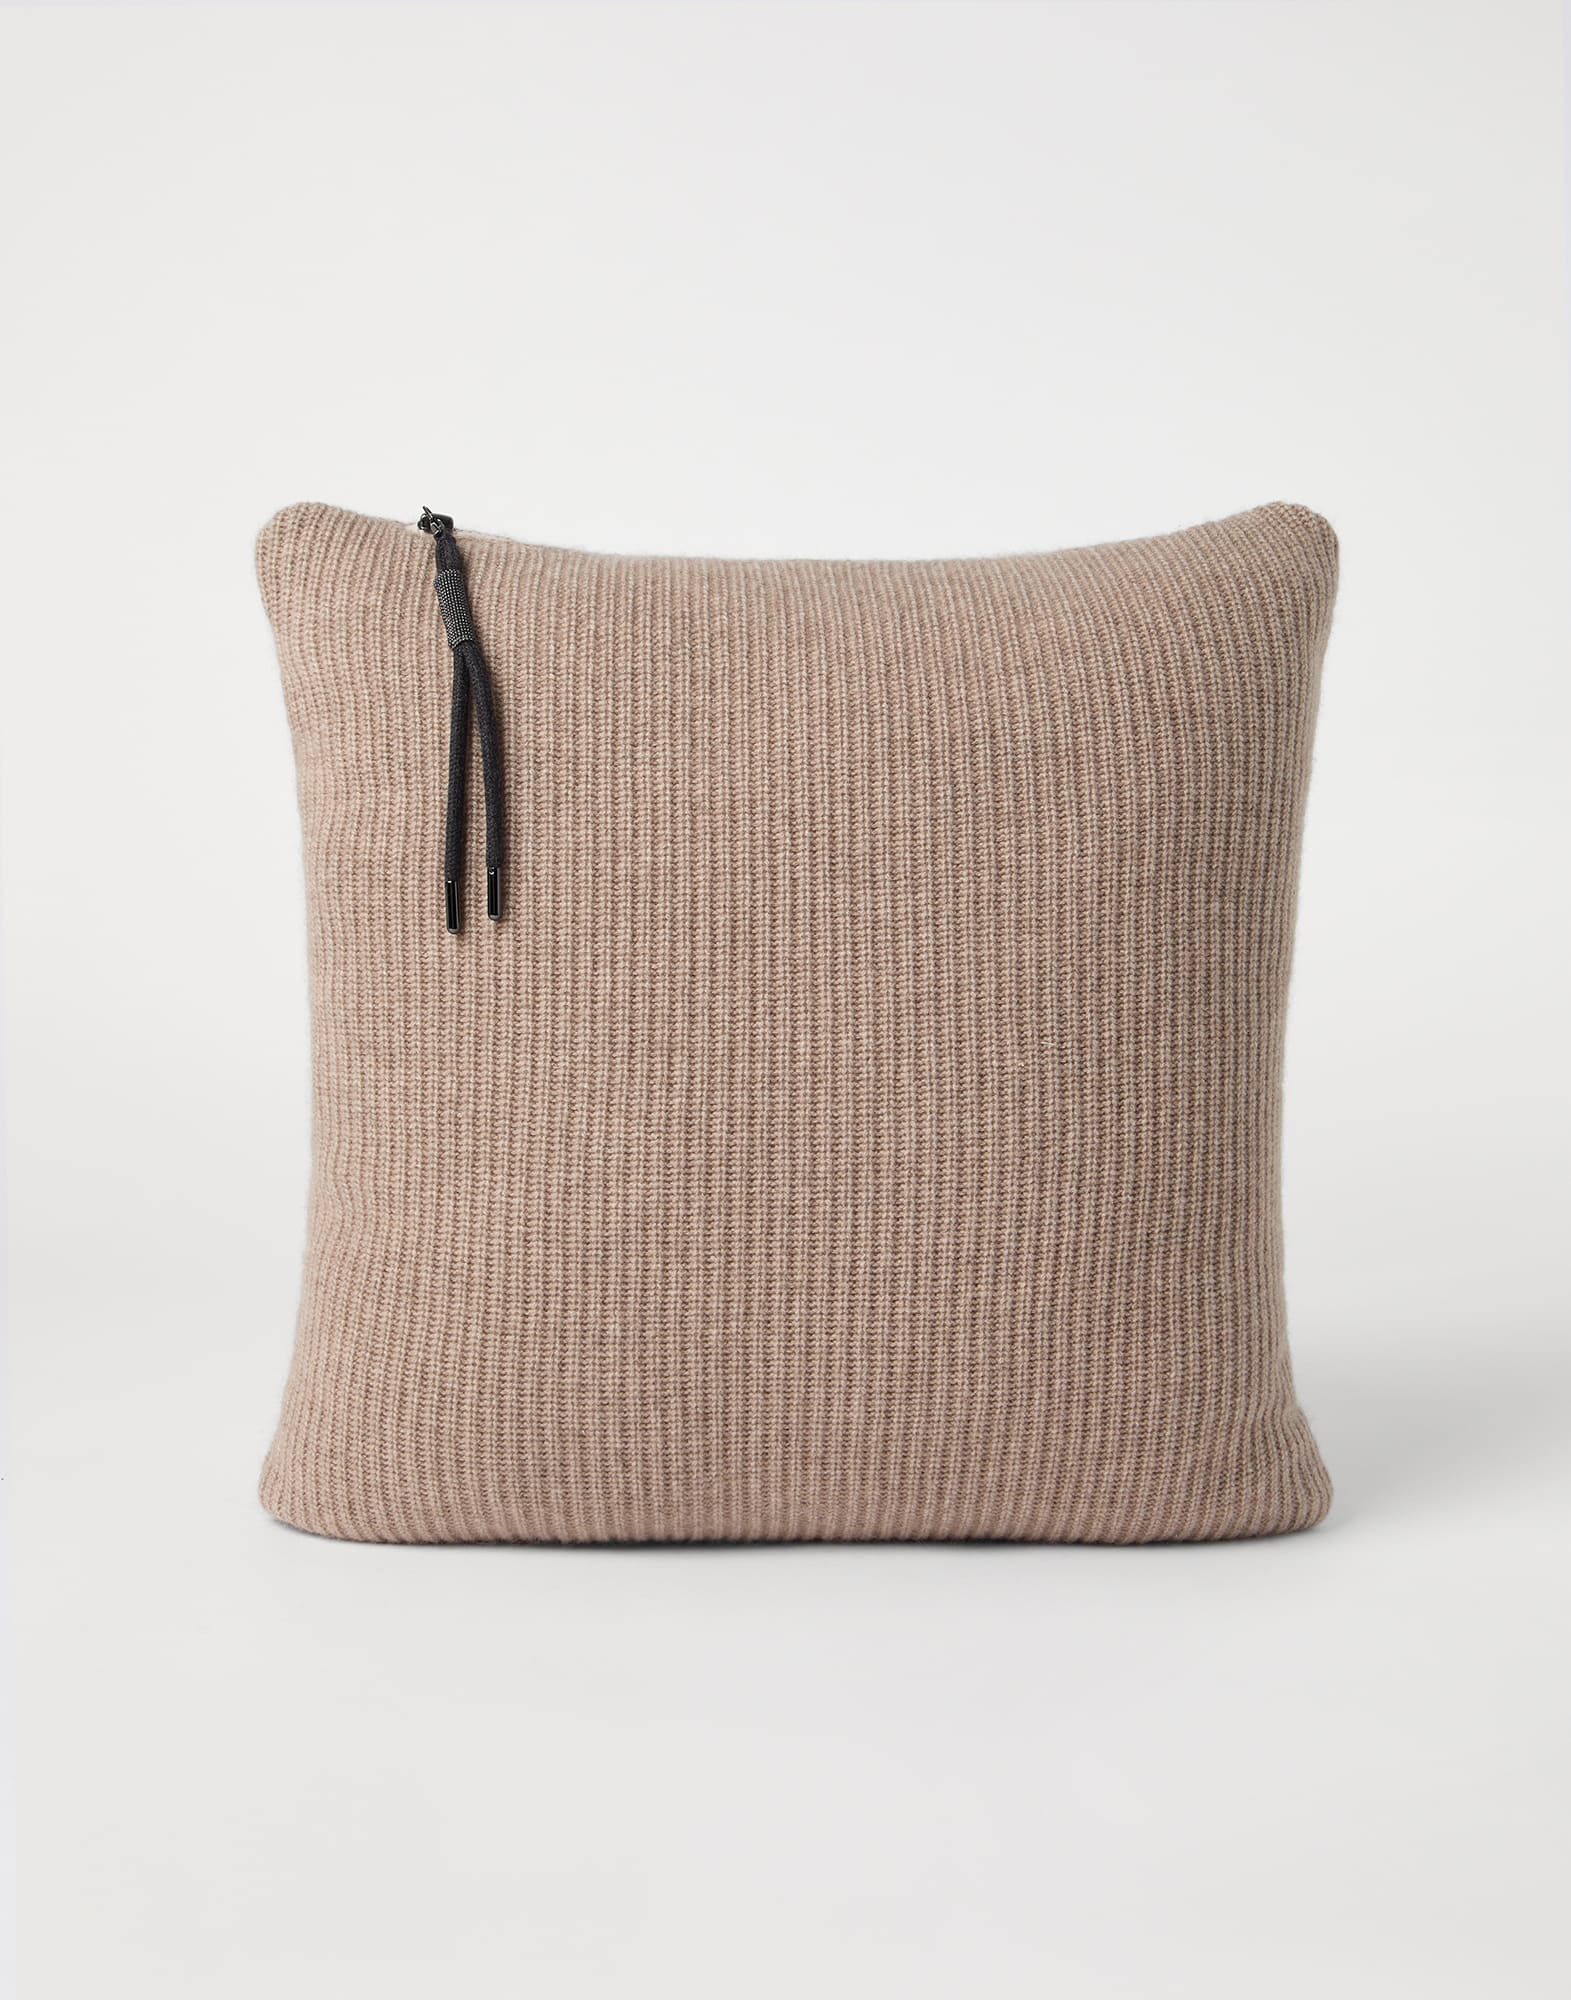 Knit cushion